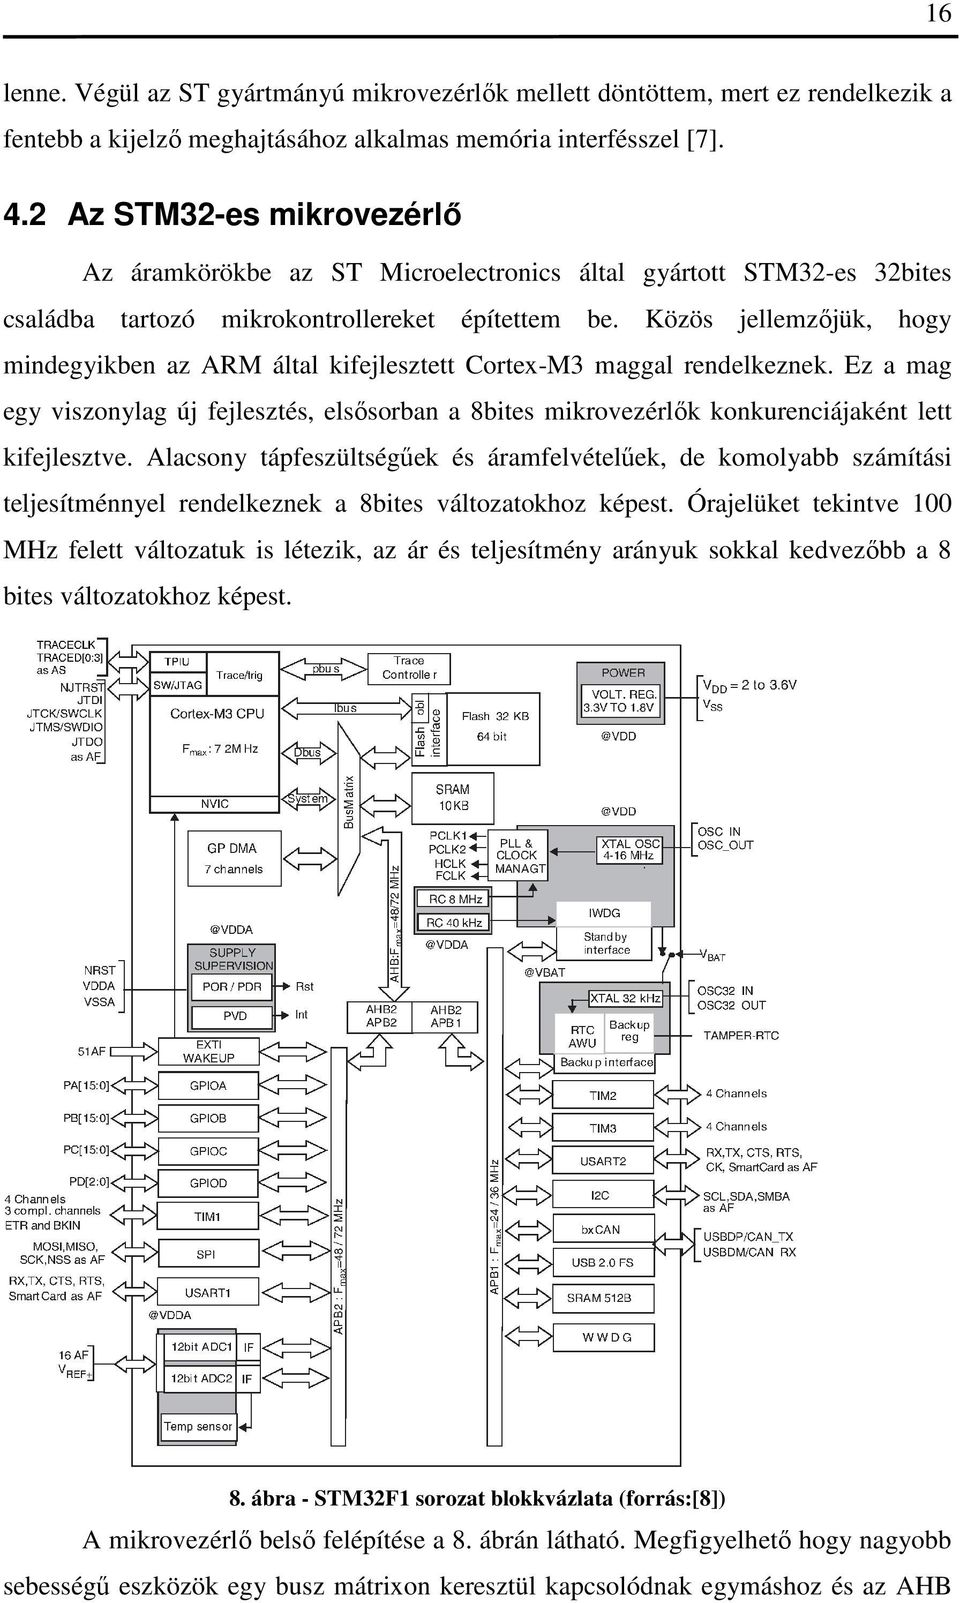 Közös jellemzőjük, hogy mindegyikben az ARM által kifejlesztett Cortex-M3 maggal rendelkeznek.